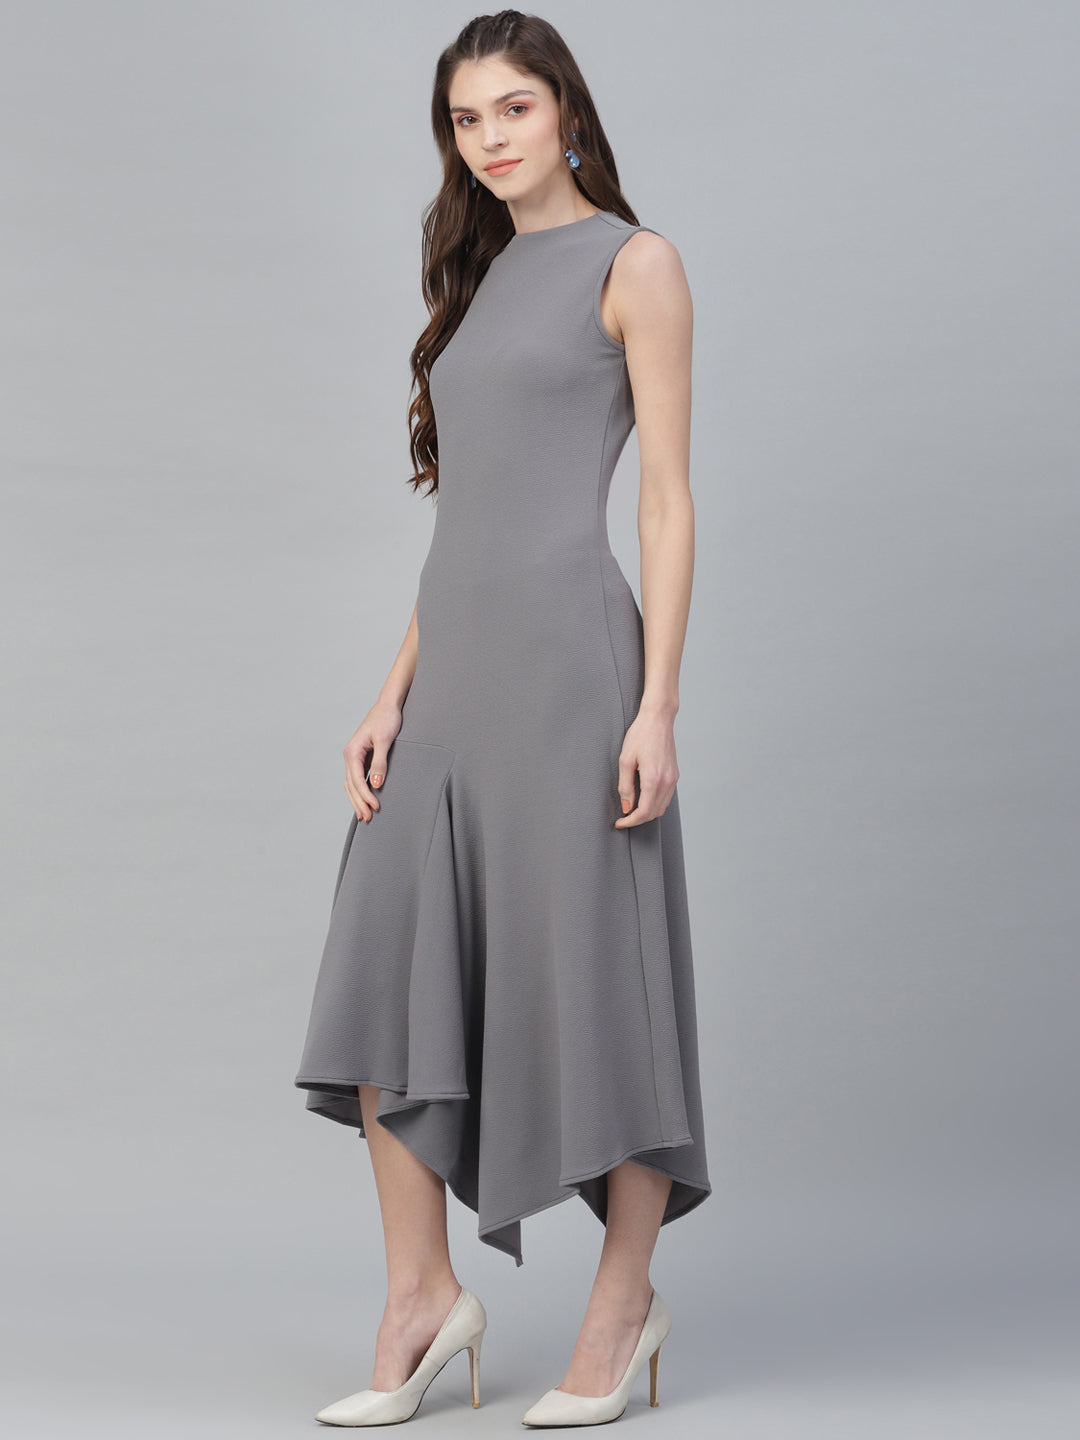 Athena Women Grey Self Design Maxi Dress - Athena Lifestyle